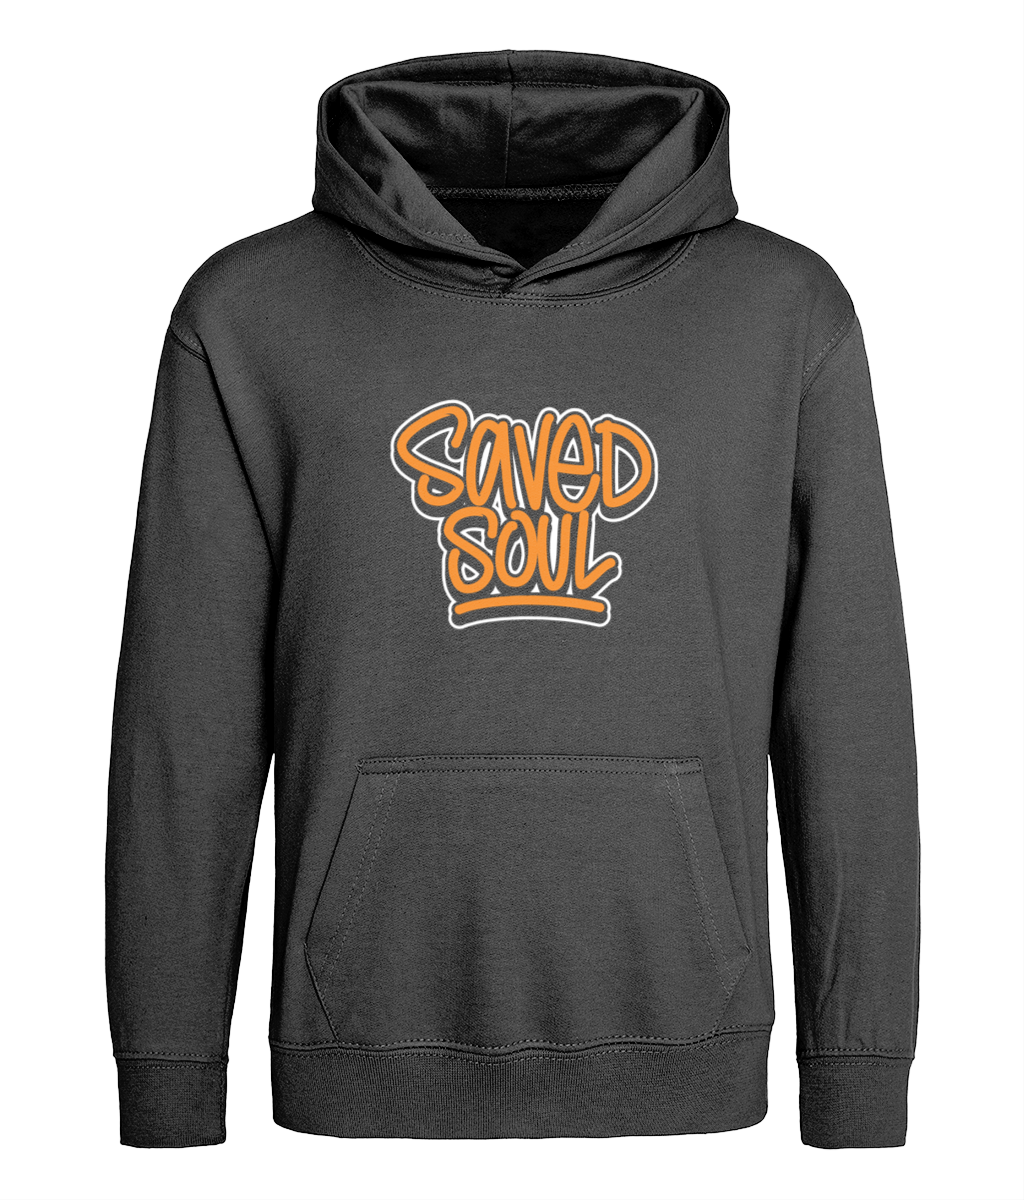 Saved Soul design on kids black hoodie